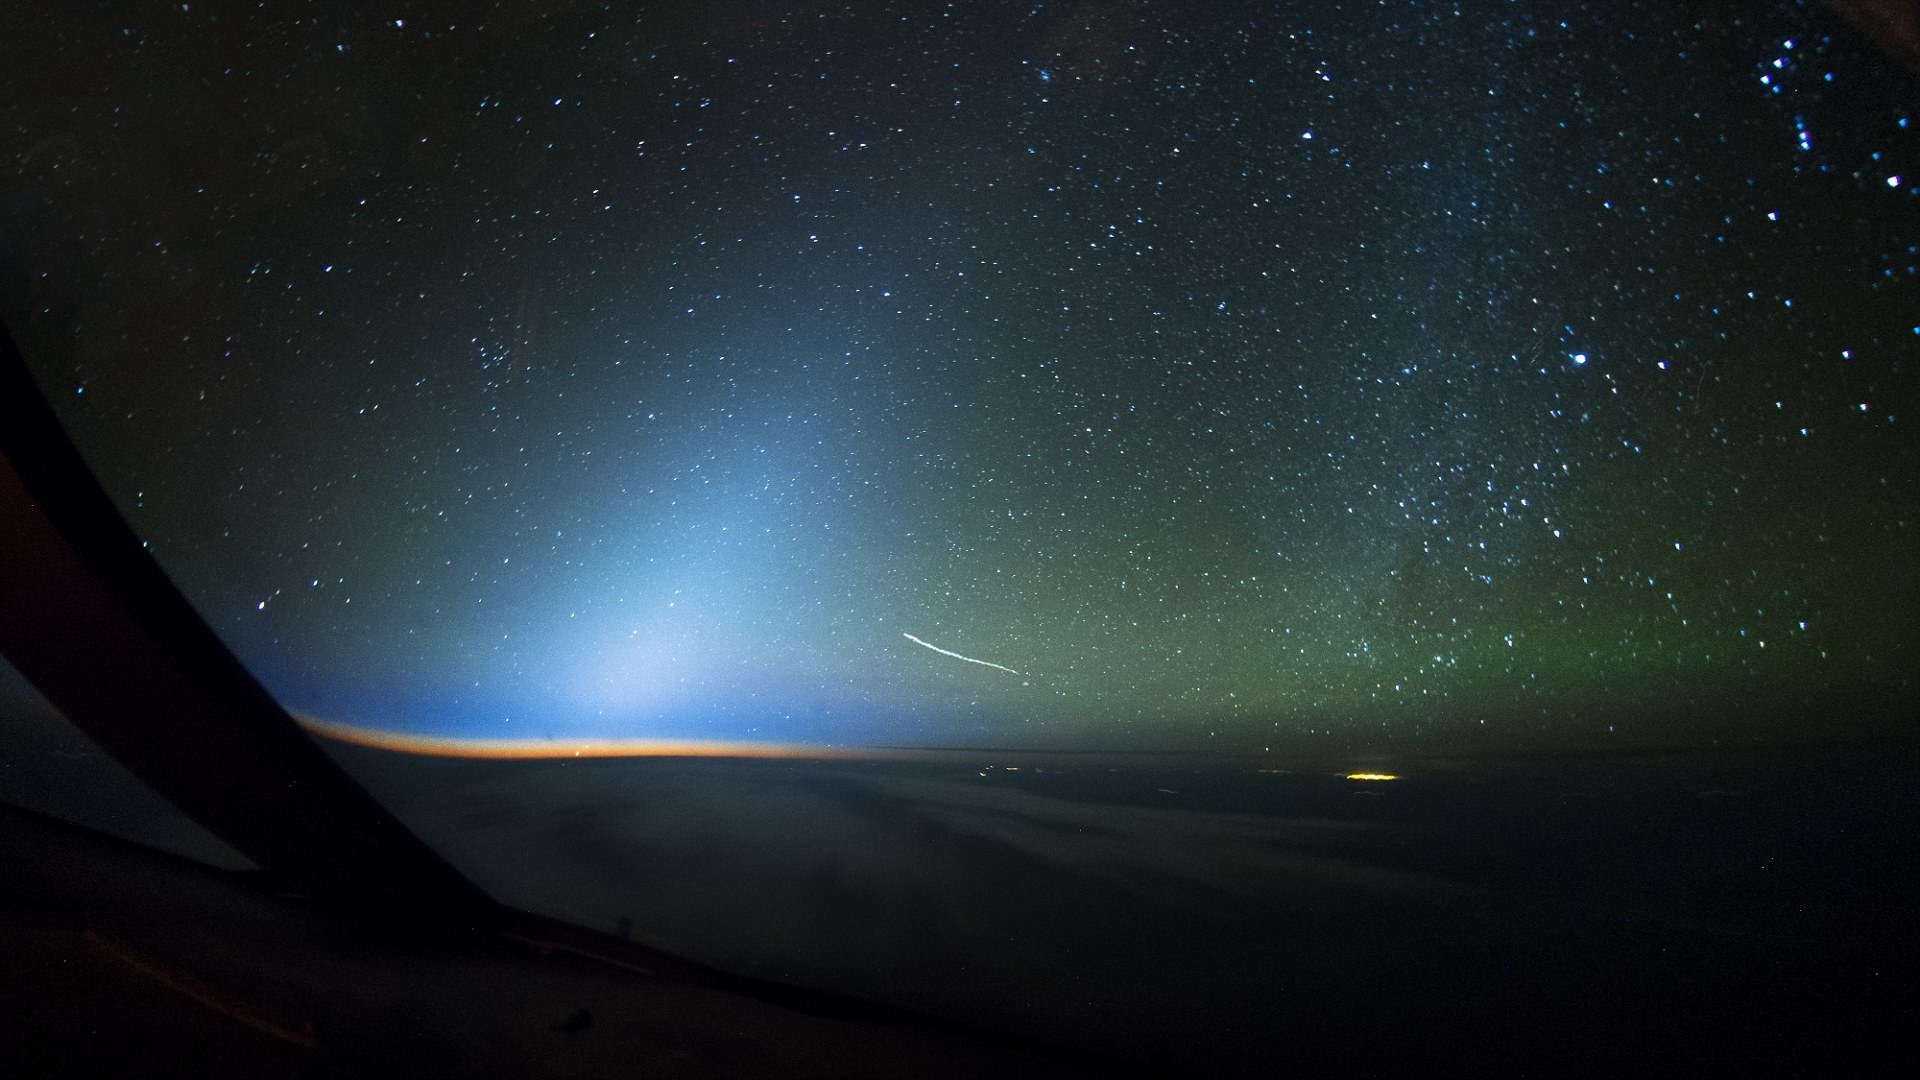 Зодиакальный свет - редкое природное явление, свечение неба вдоль эклиптики вследствие подсвечивания Солнцем мелких частиц пыли и других космических объектов